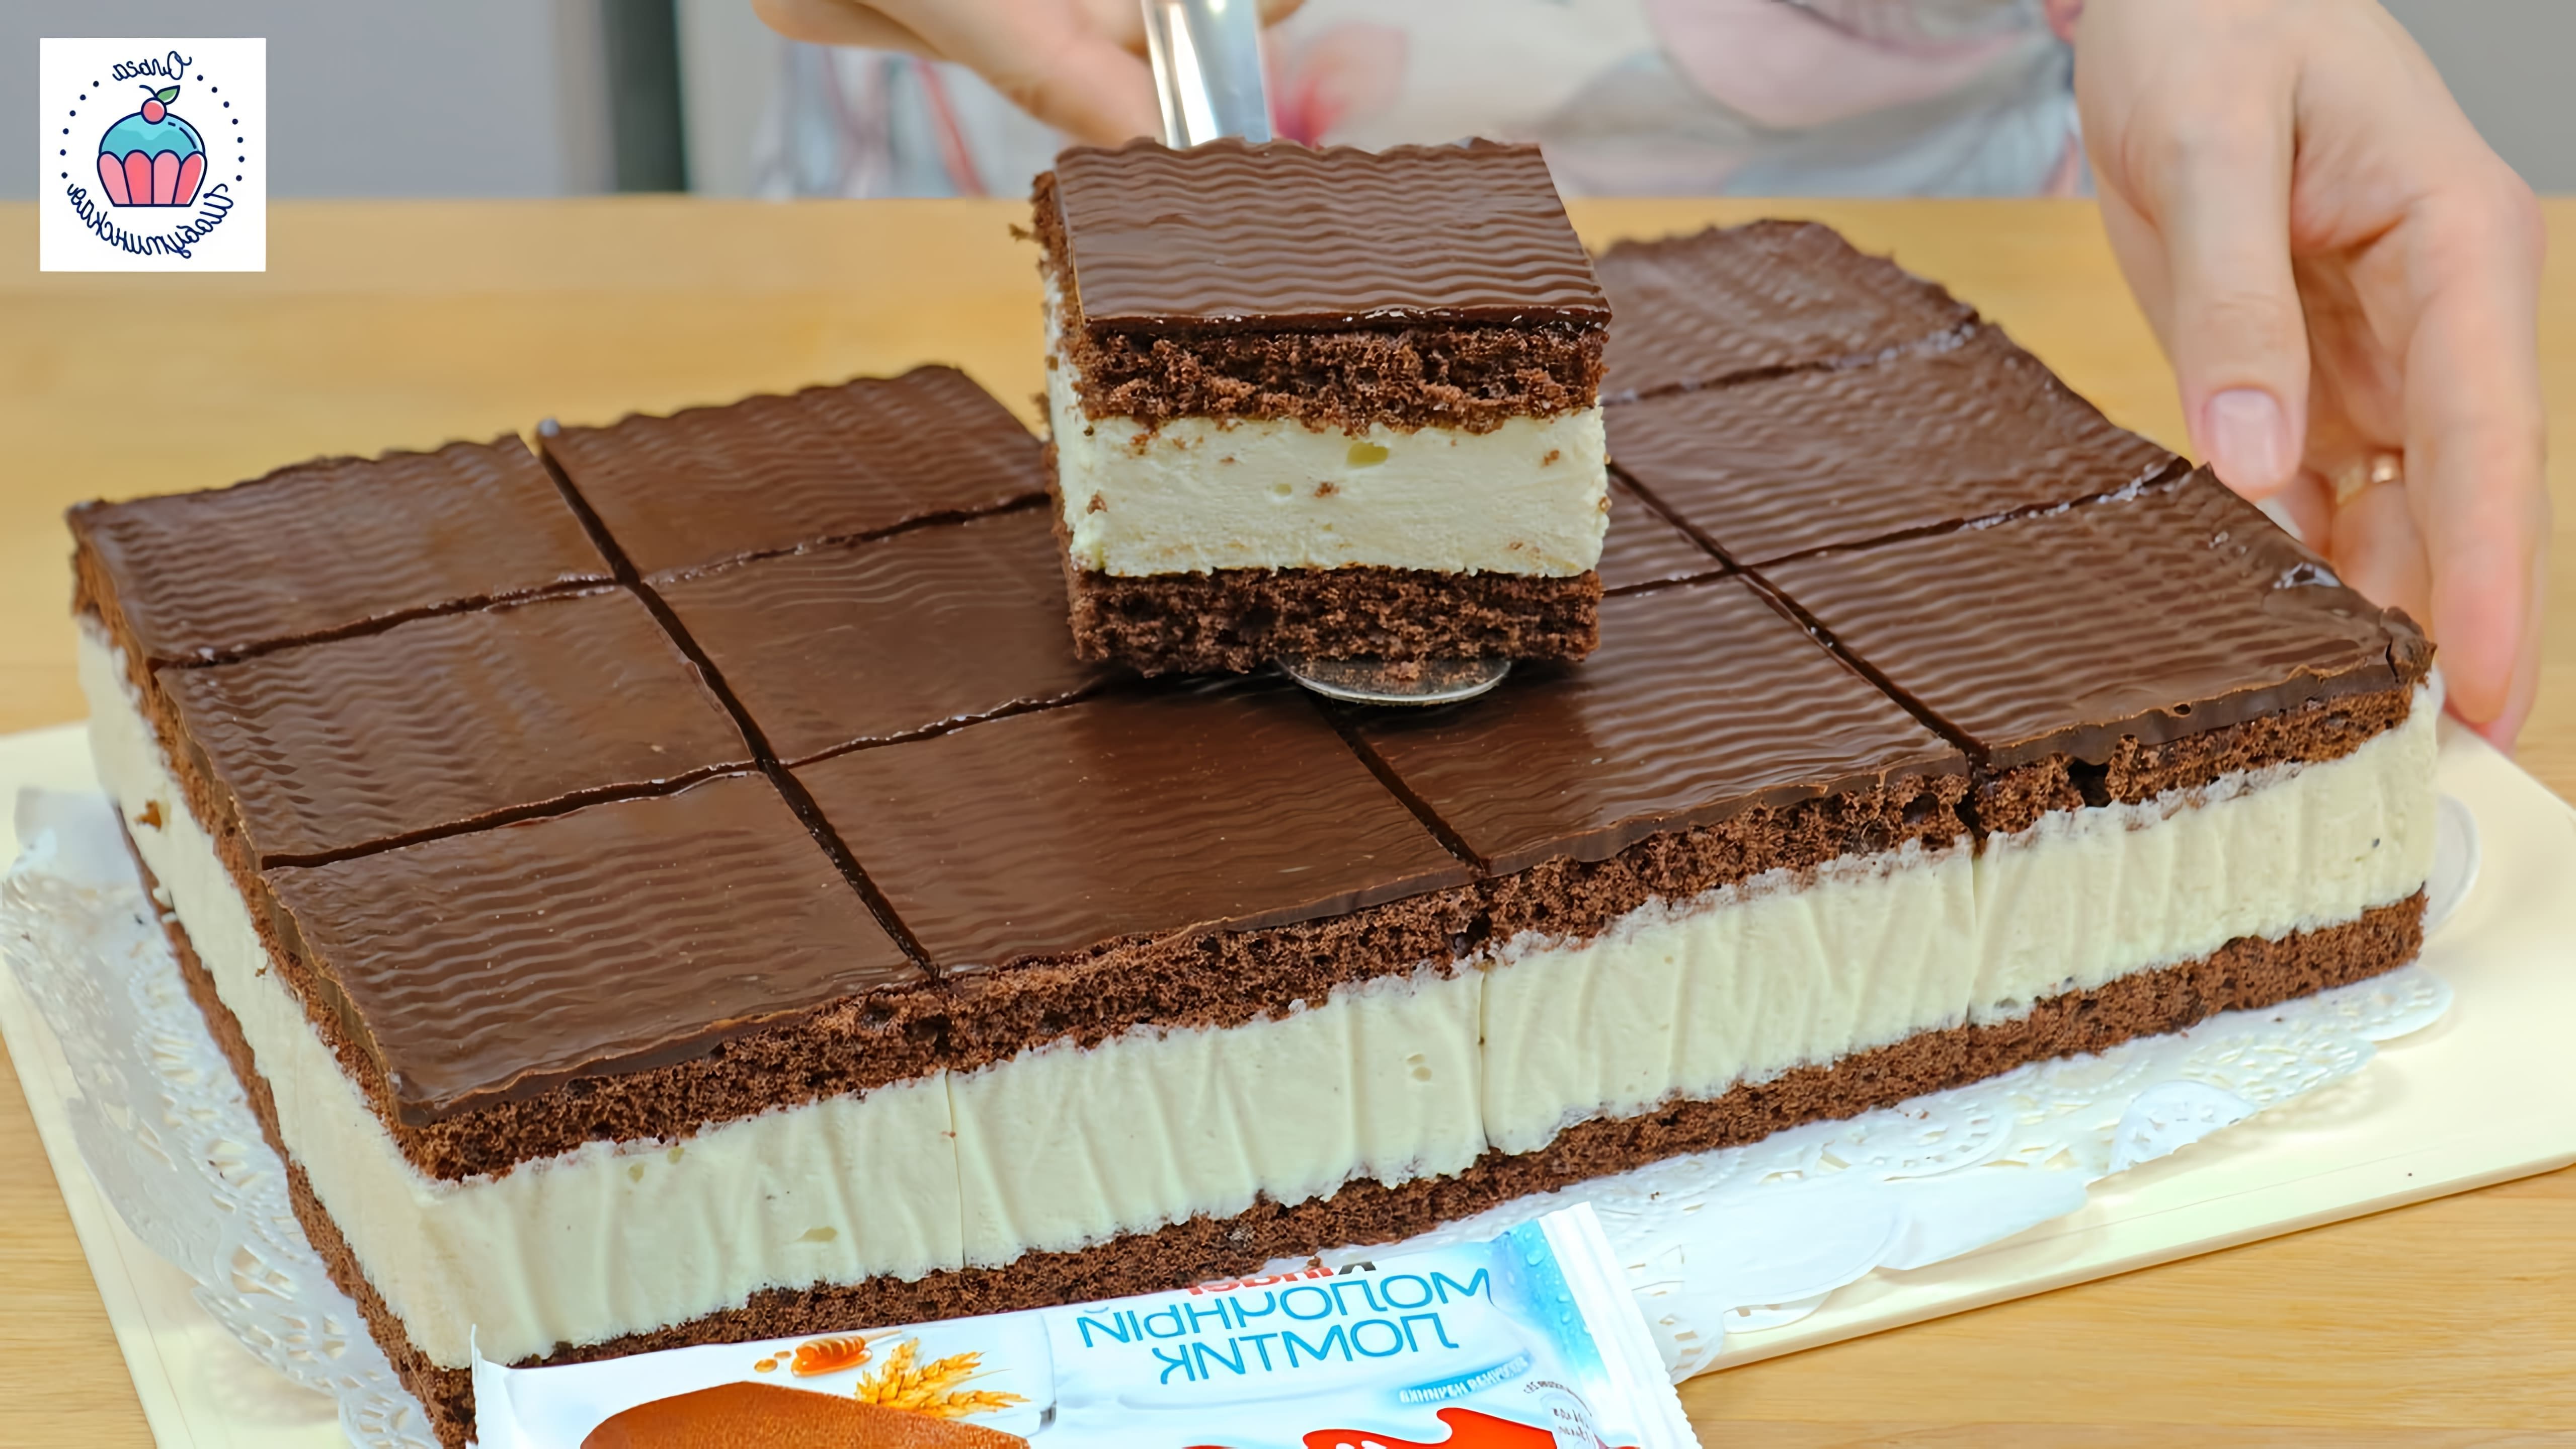 В этом видео демонстрируется процесс приготовления торта "Молочный Ломтик" по мотивам знаменитого десерта Kinder